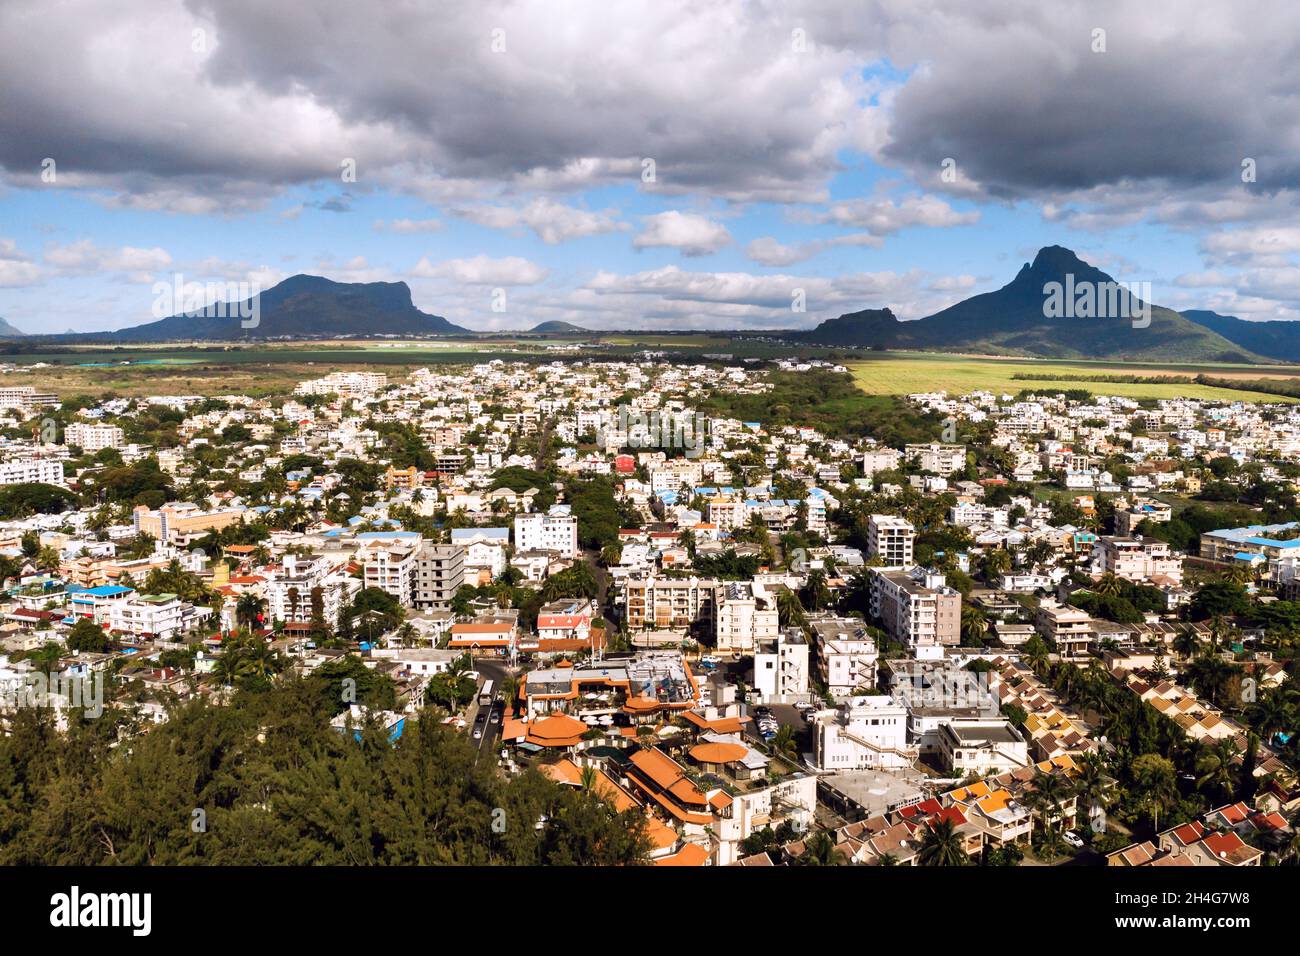 Vista panoramica dall'alto della città e delle montagne sull'isola di Mauritius, isola di Mauritius. Foto Stock